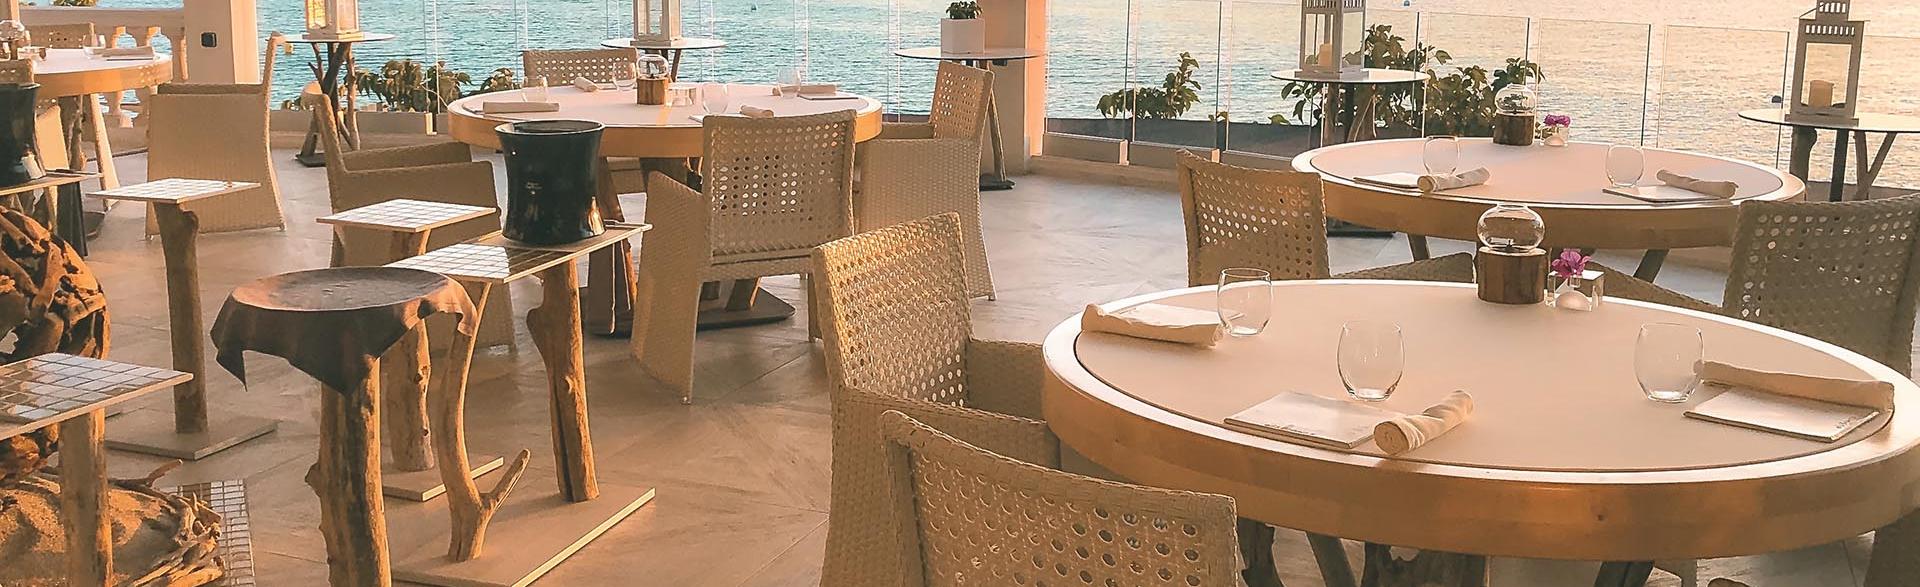 terrace of Els Brancs restaurant